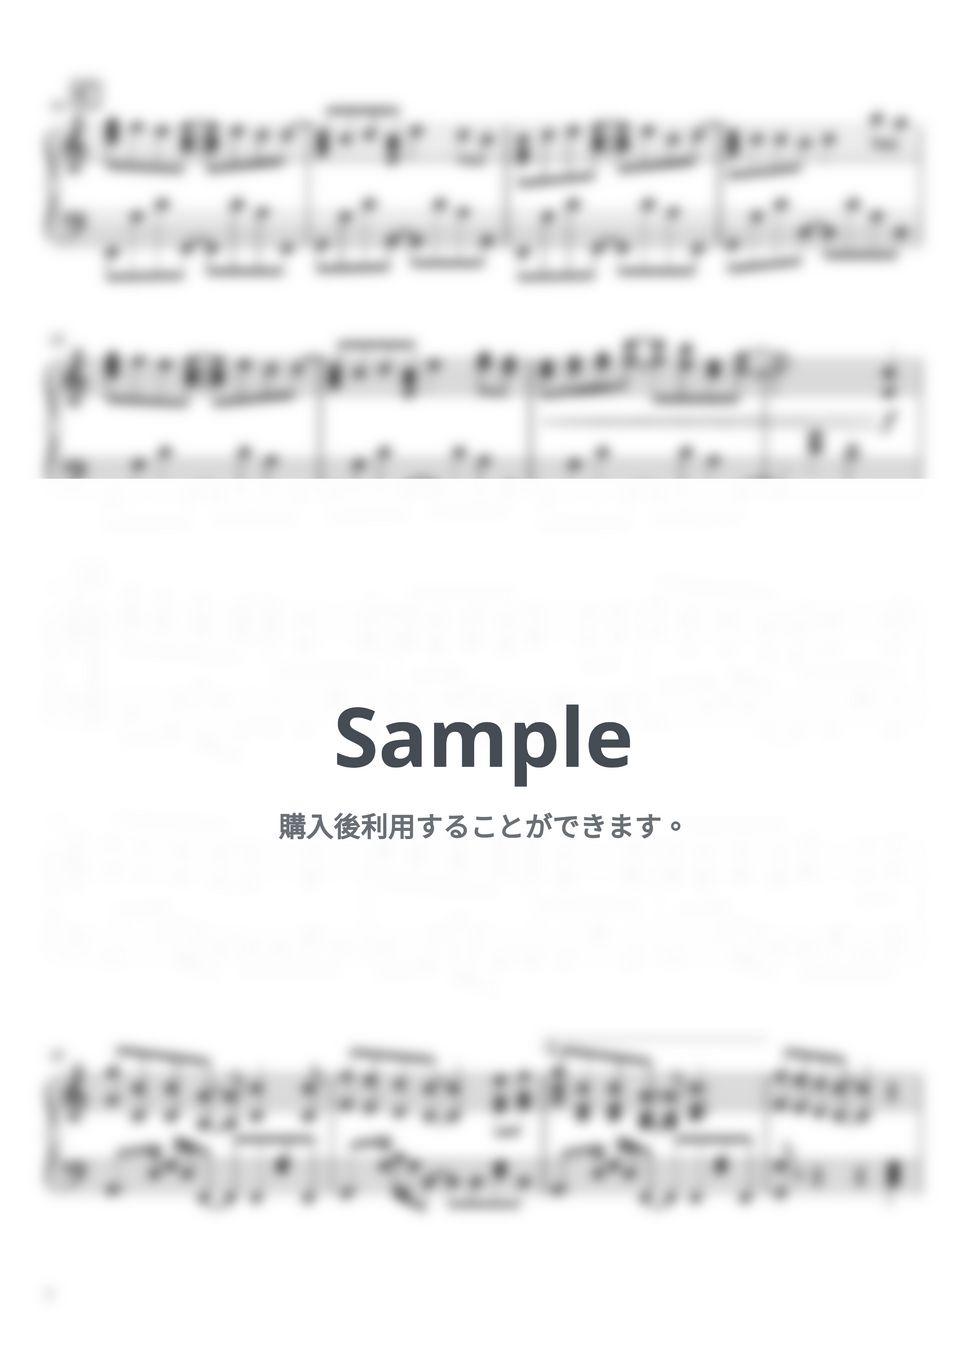 夜のひと笑い - ワライカタ (ピアノソロ / 中級～上級) by SuperMomoFactory